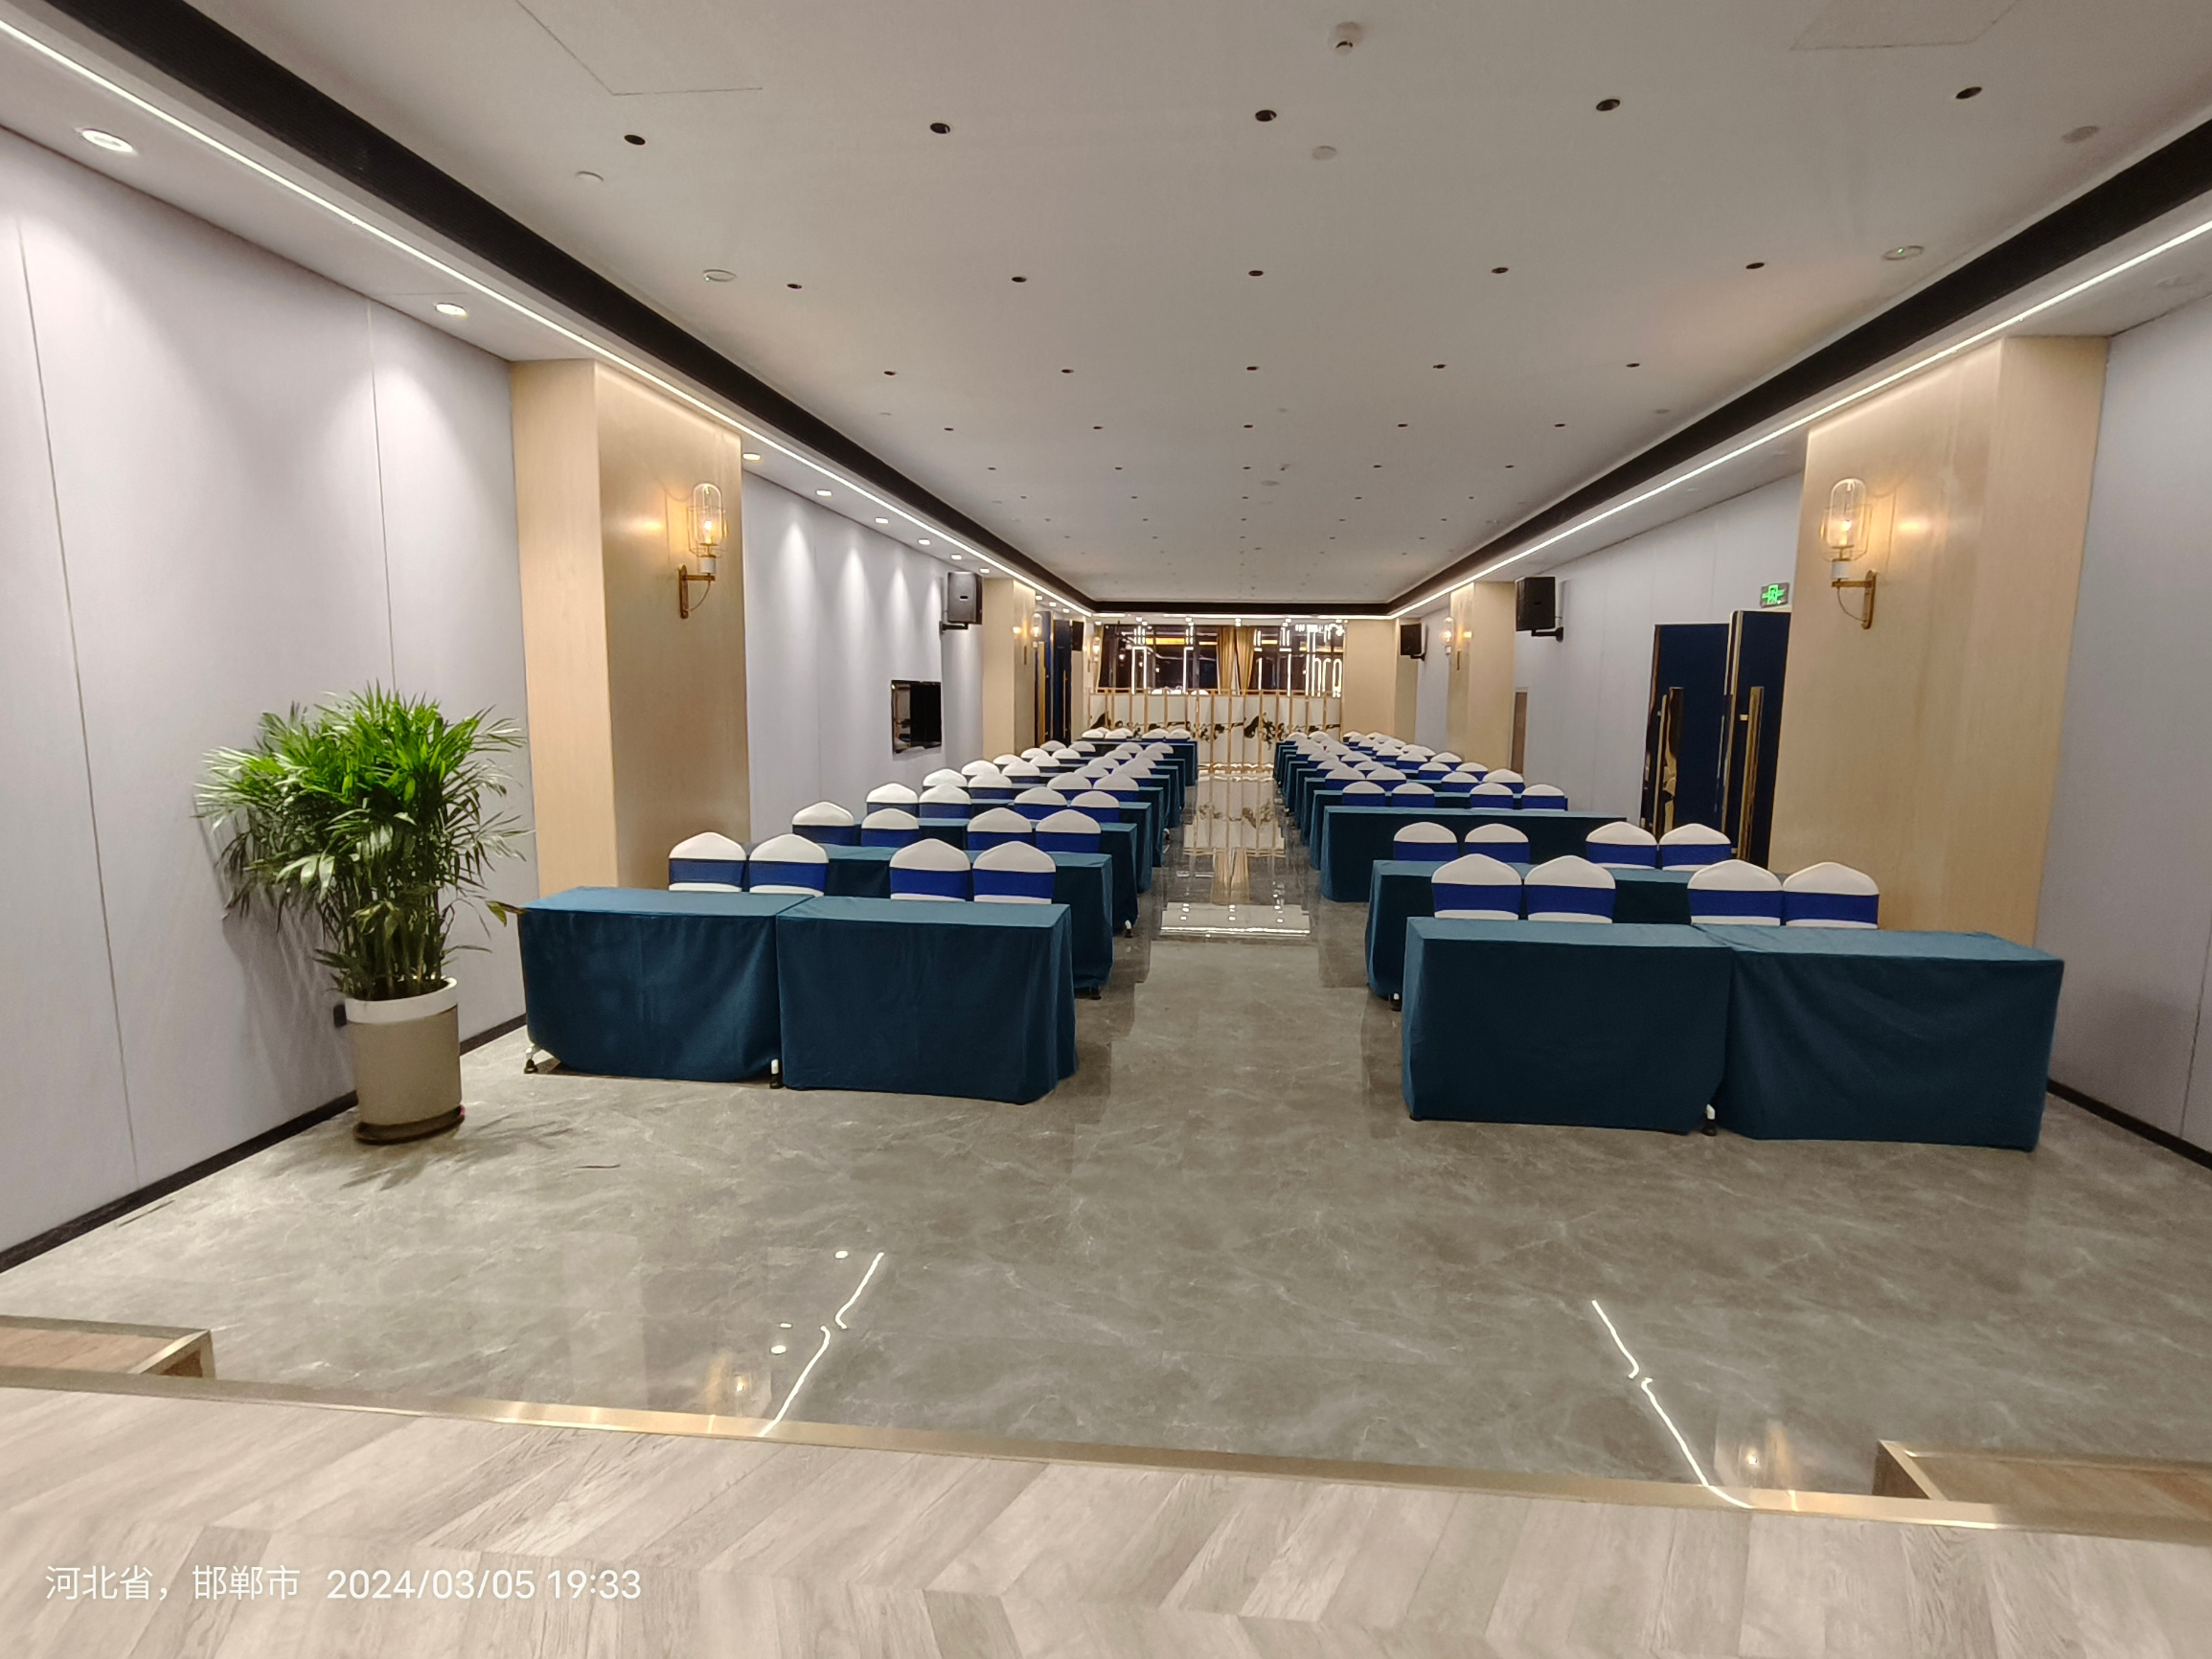 云酒店是我们五得利会议在邯郸的定点会议地点，它这里有好几个多功能会议室，音响大屏都嘎嘎给力，有专门的